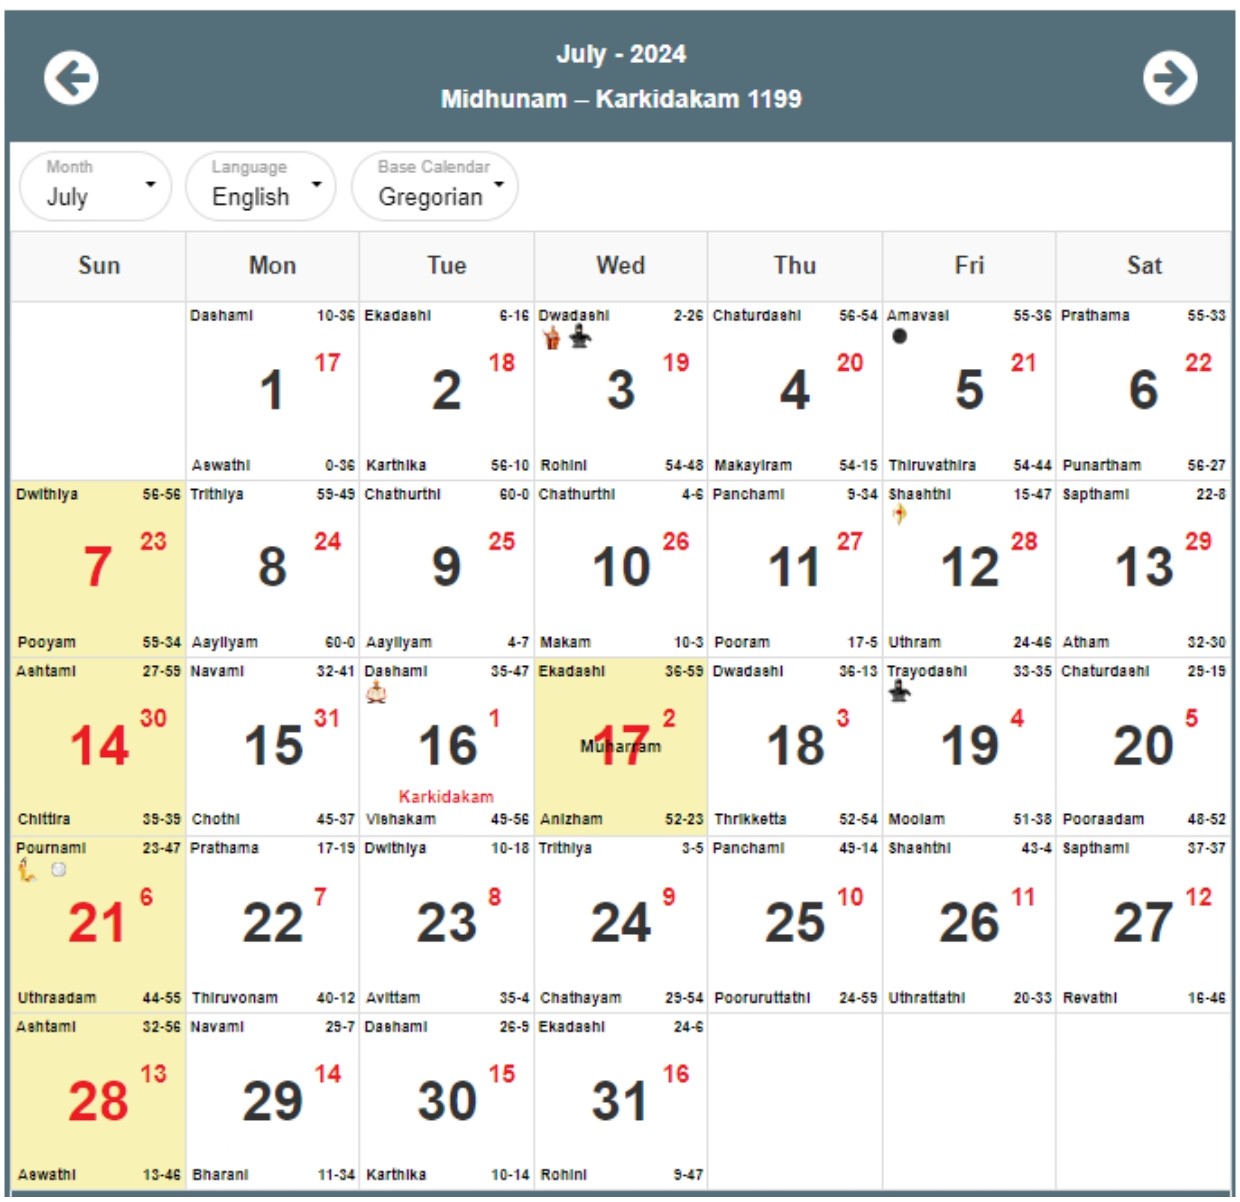 Malayalam Calendar 2024, Malayalam Panchangam 2024 with Festivals PDF ...